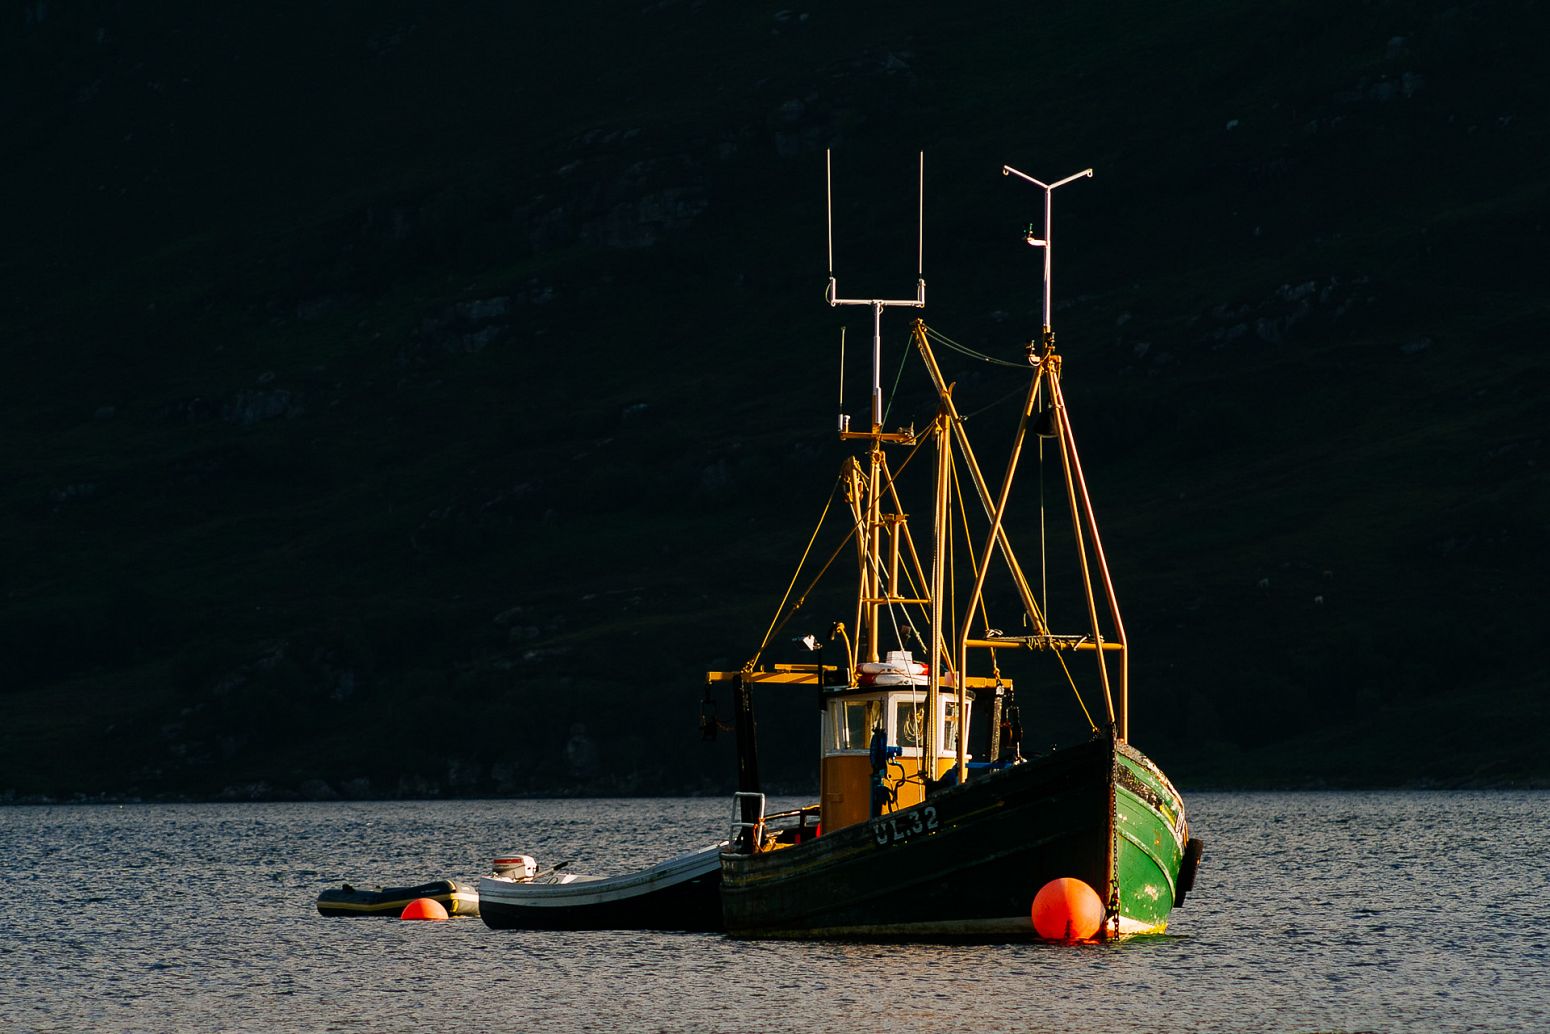 Fishing boat, Ullapool, Scotland